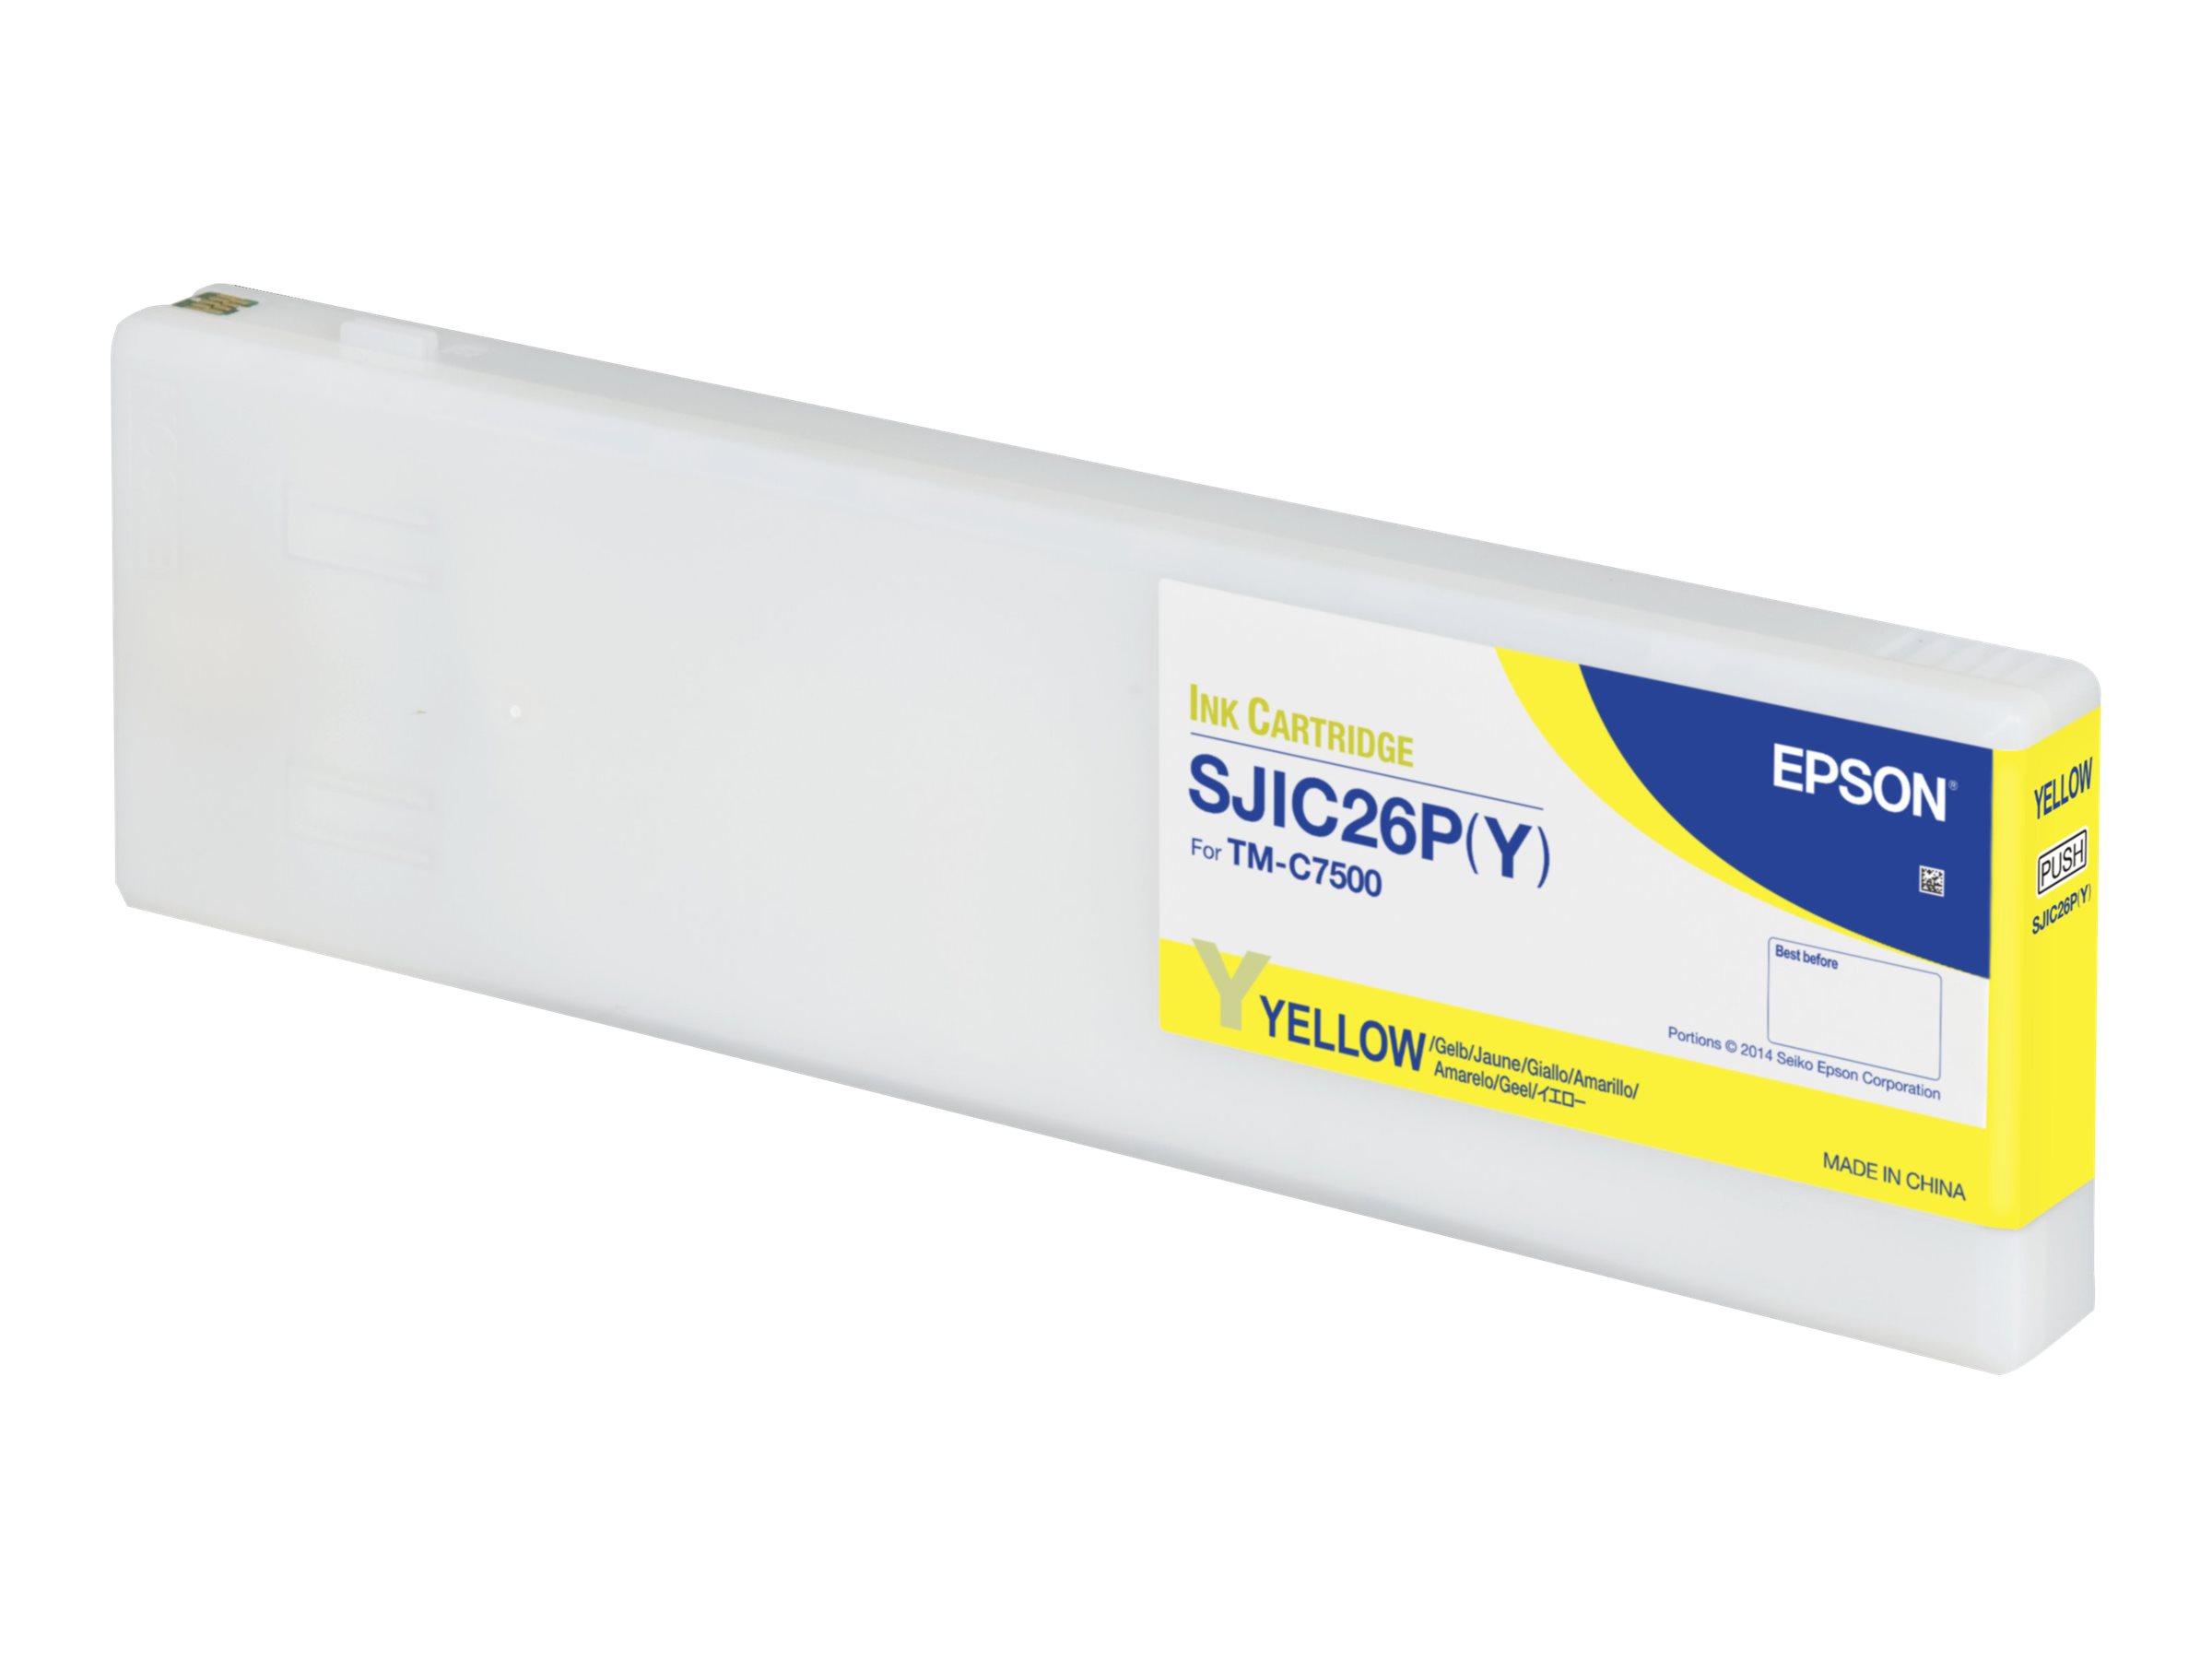 Epson SJIC26P(Y) - 294.3 ml - jaune - original - cartouche d'encre - pour ColorWorks TM-C7500 - C33S020621 - Cartouches d'imprimante